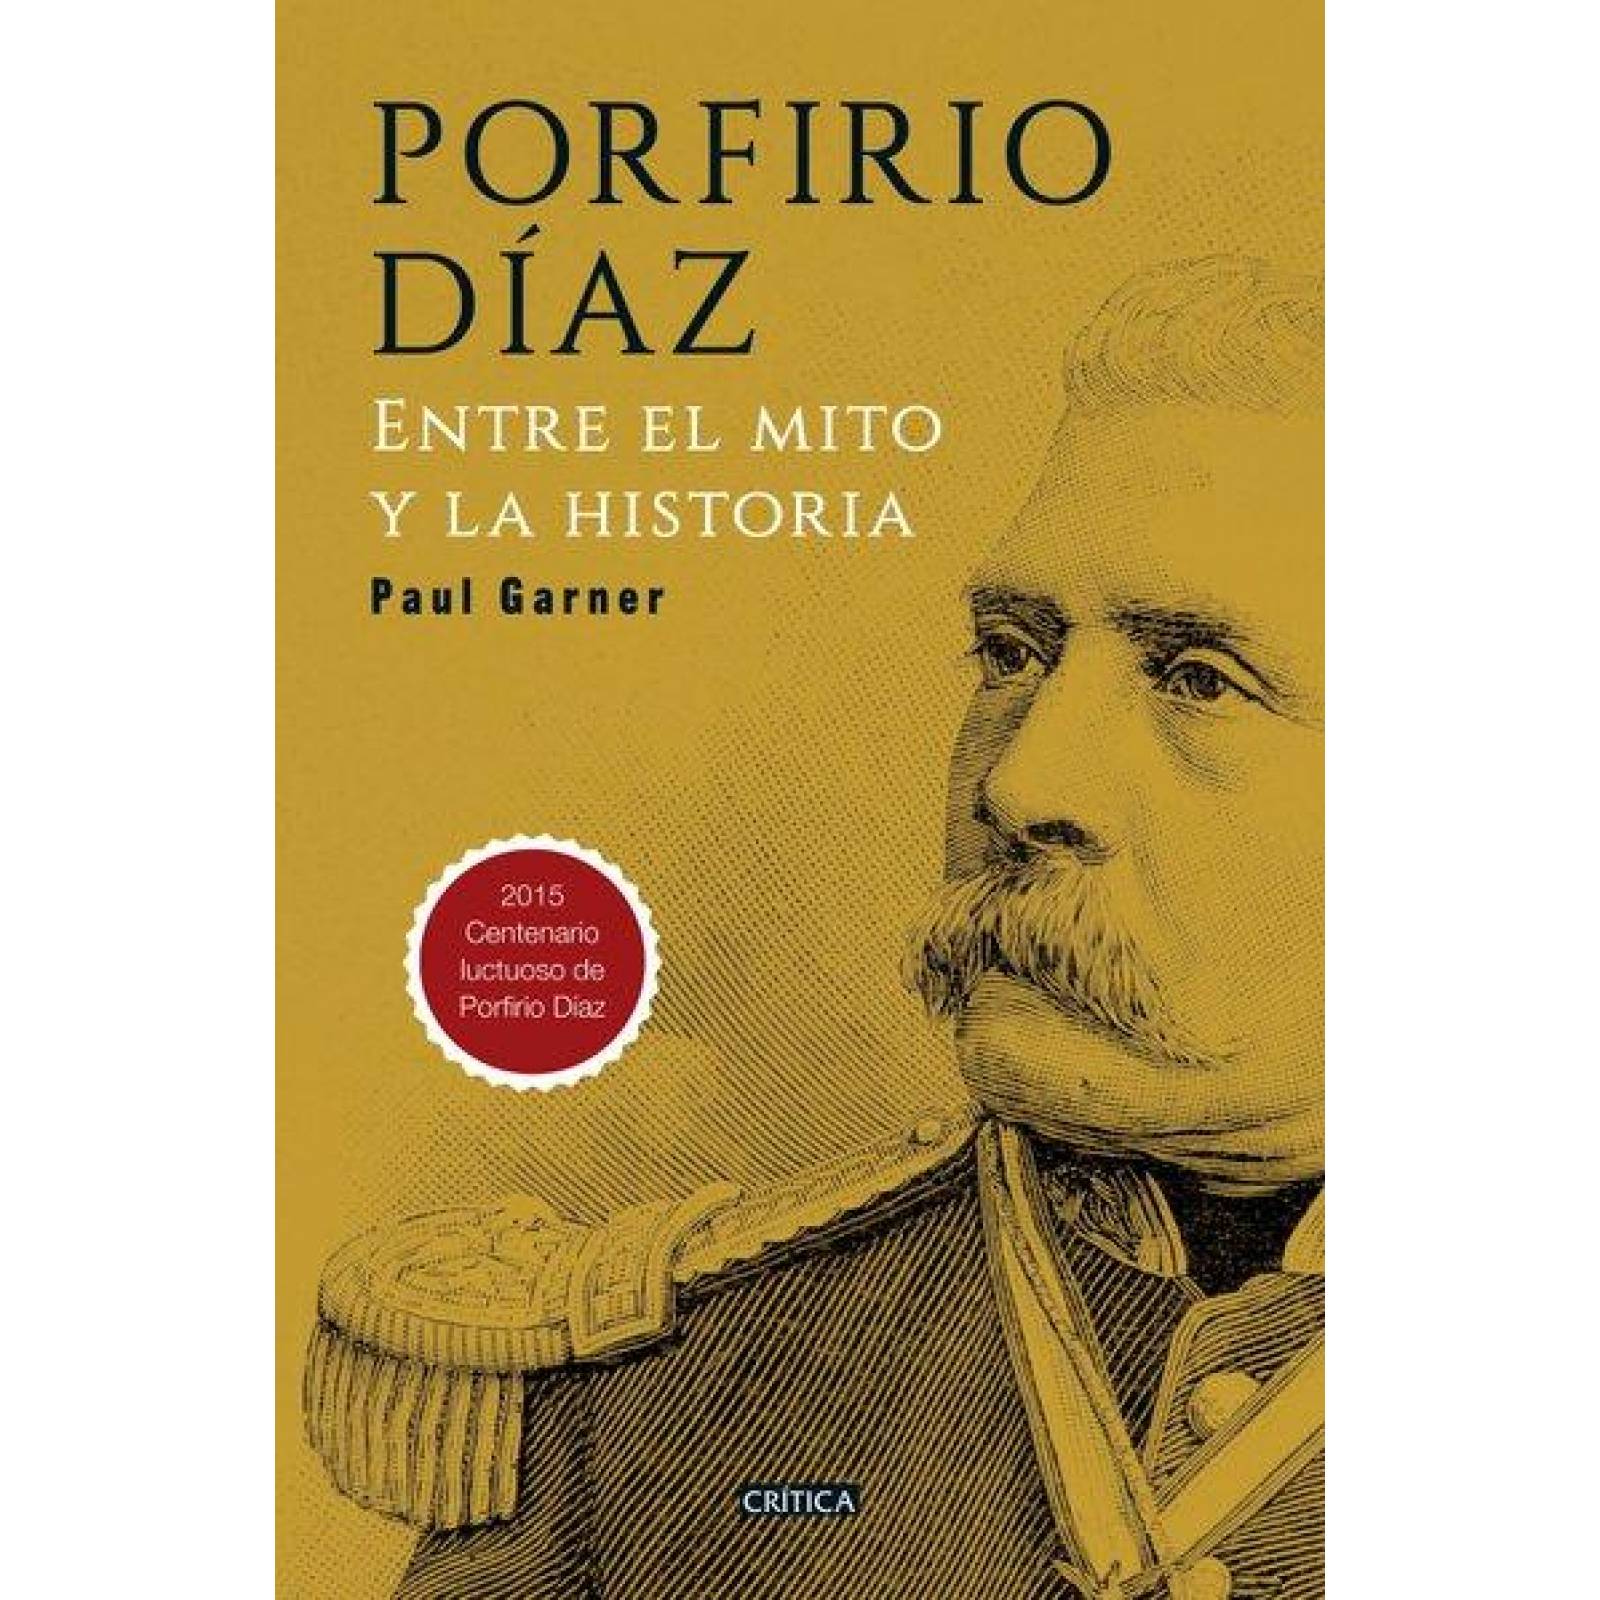 Porfirio Diaz 